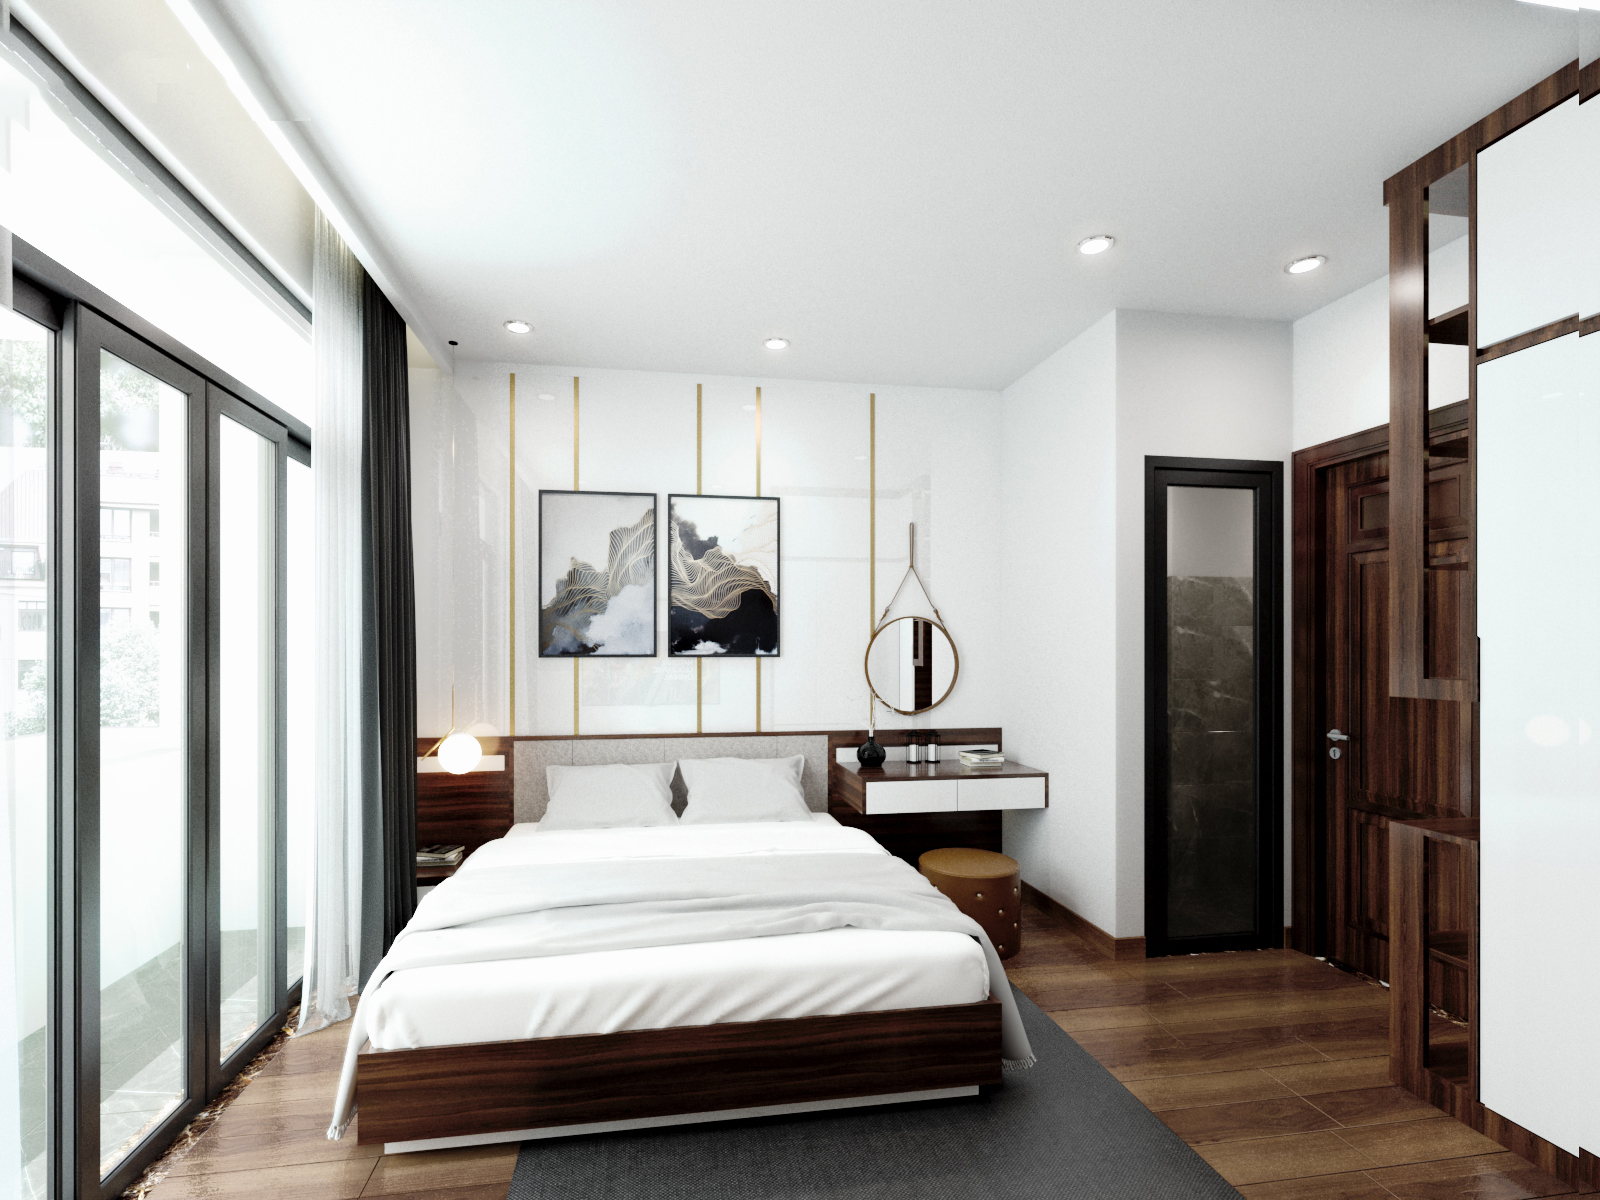 Phòng ngủ master với tone màu trắng làm chủ đạo. Toàn bộ nội thất của căn phòng đều được tính toán về kích thước để phù hợp với diện tích phòng